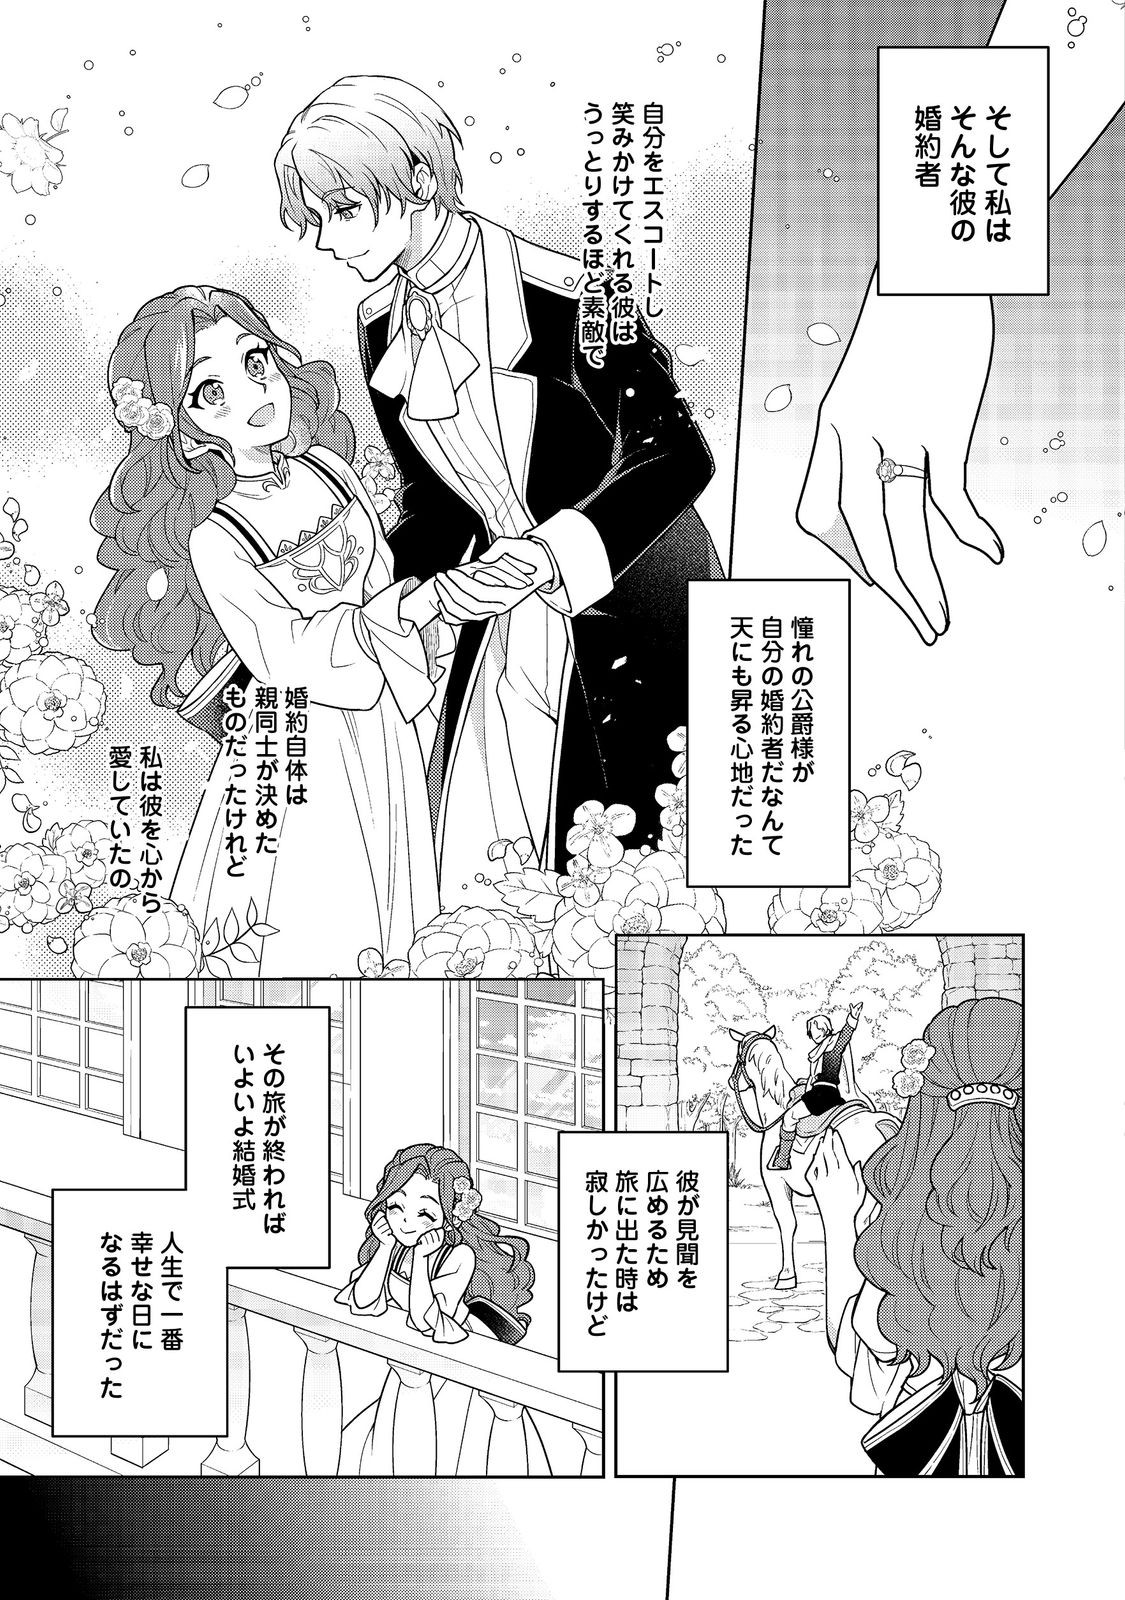 Mori no Hashikko no Chibi Majo-san - Chapter 2.1 - Page 15